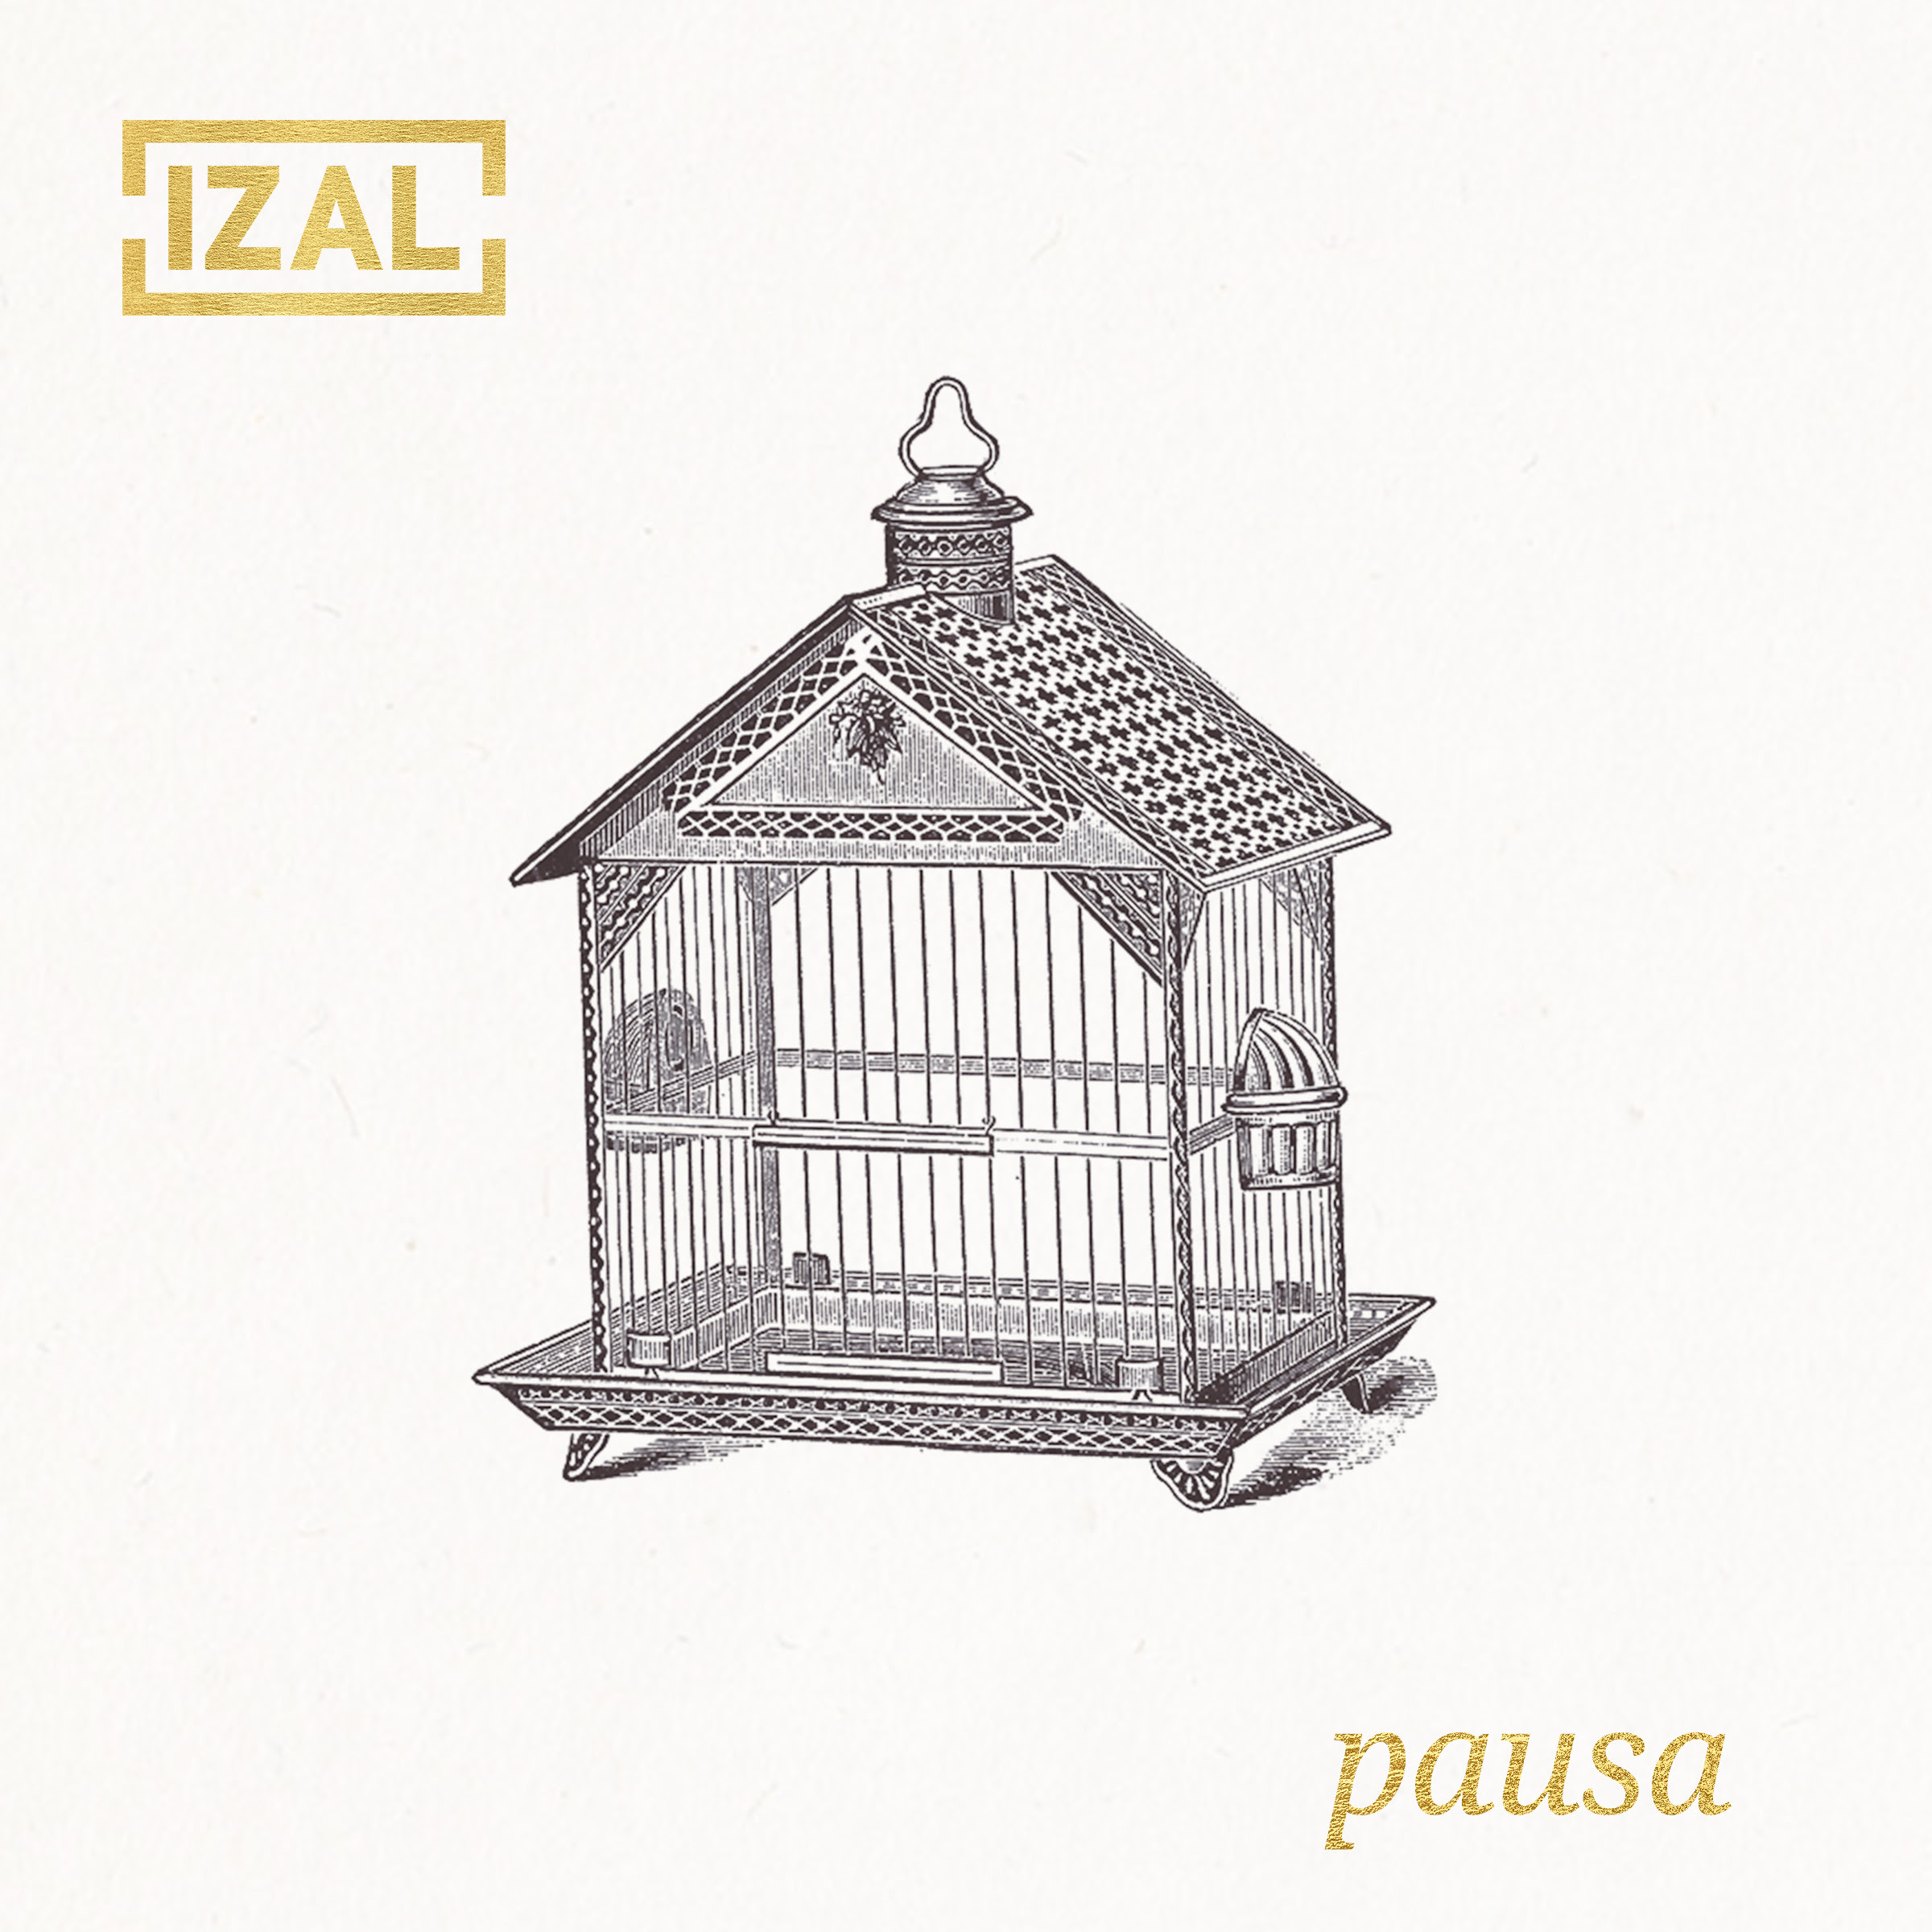 Izal estrena ‘Pausa’ como segundo adelanto de su nuevo álbum ‘Autoterapia’